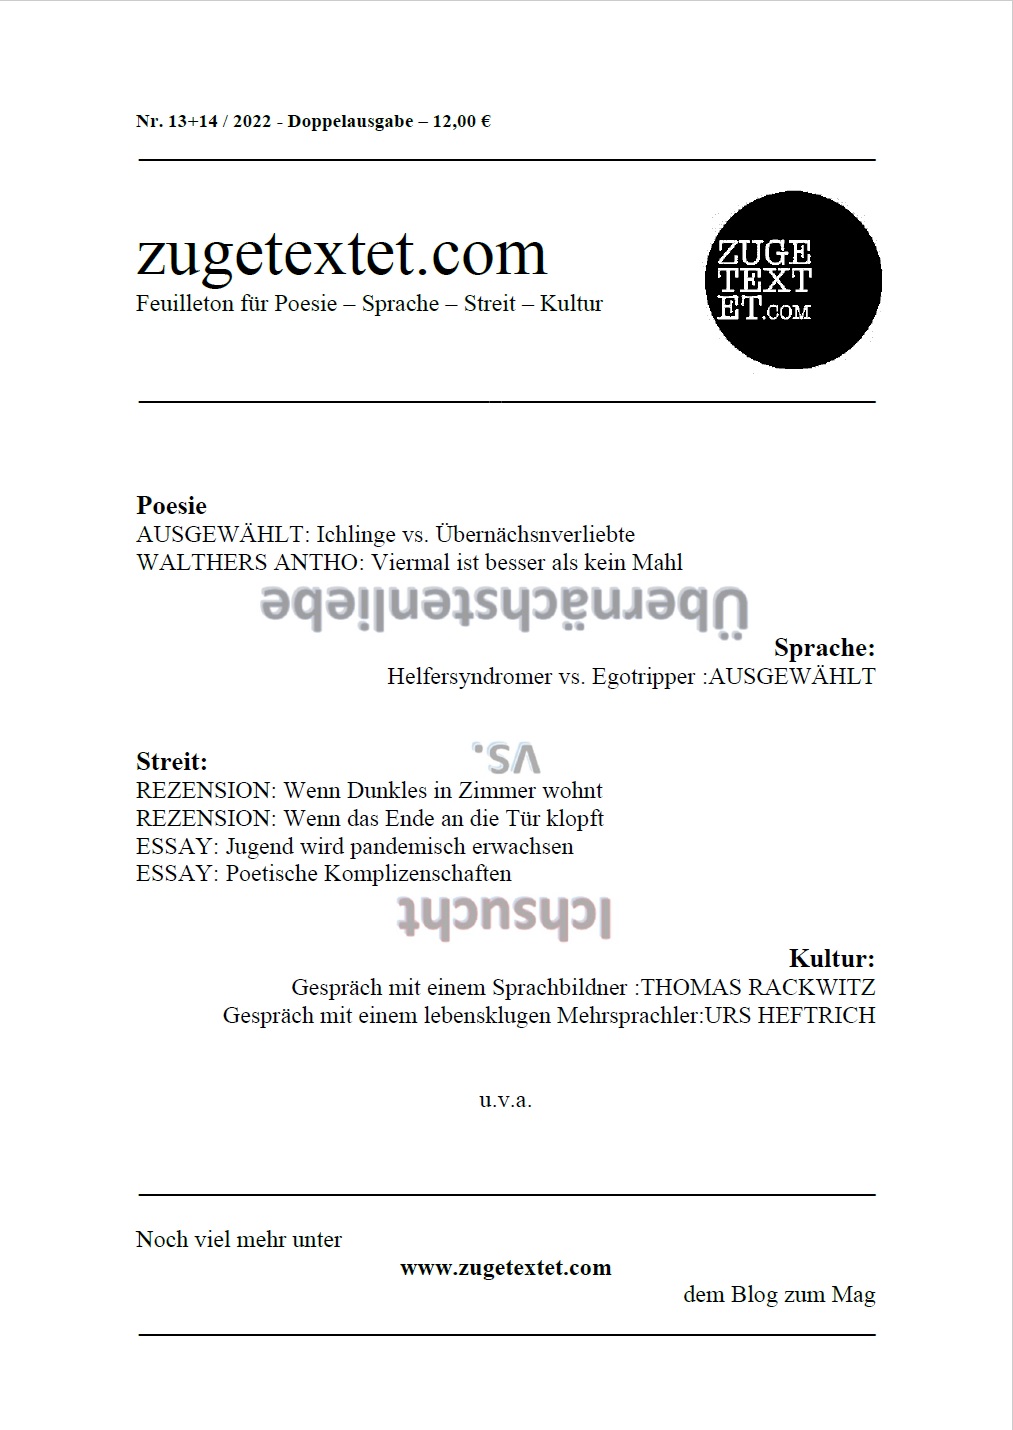 zugetextet_com Cover 13_14